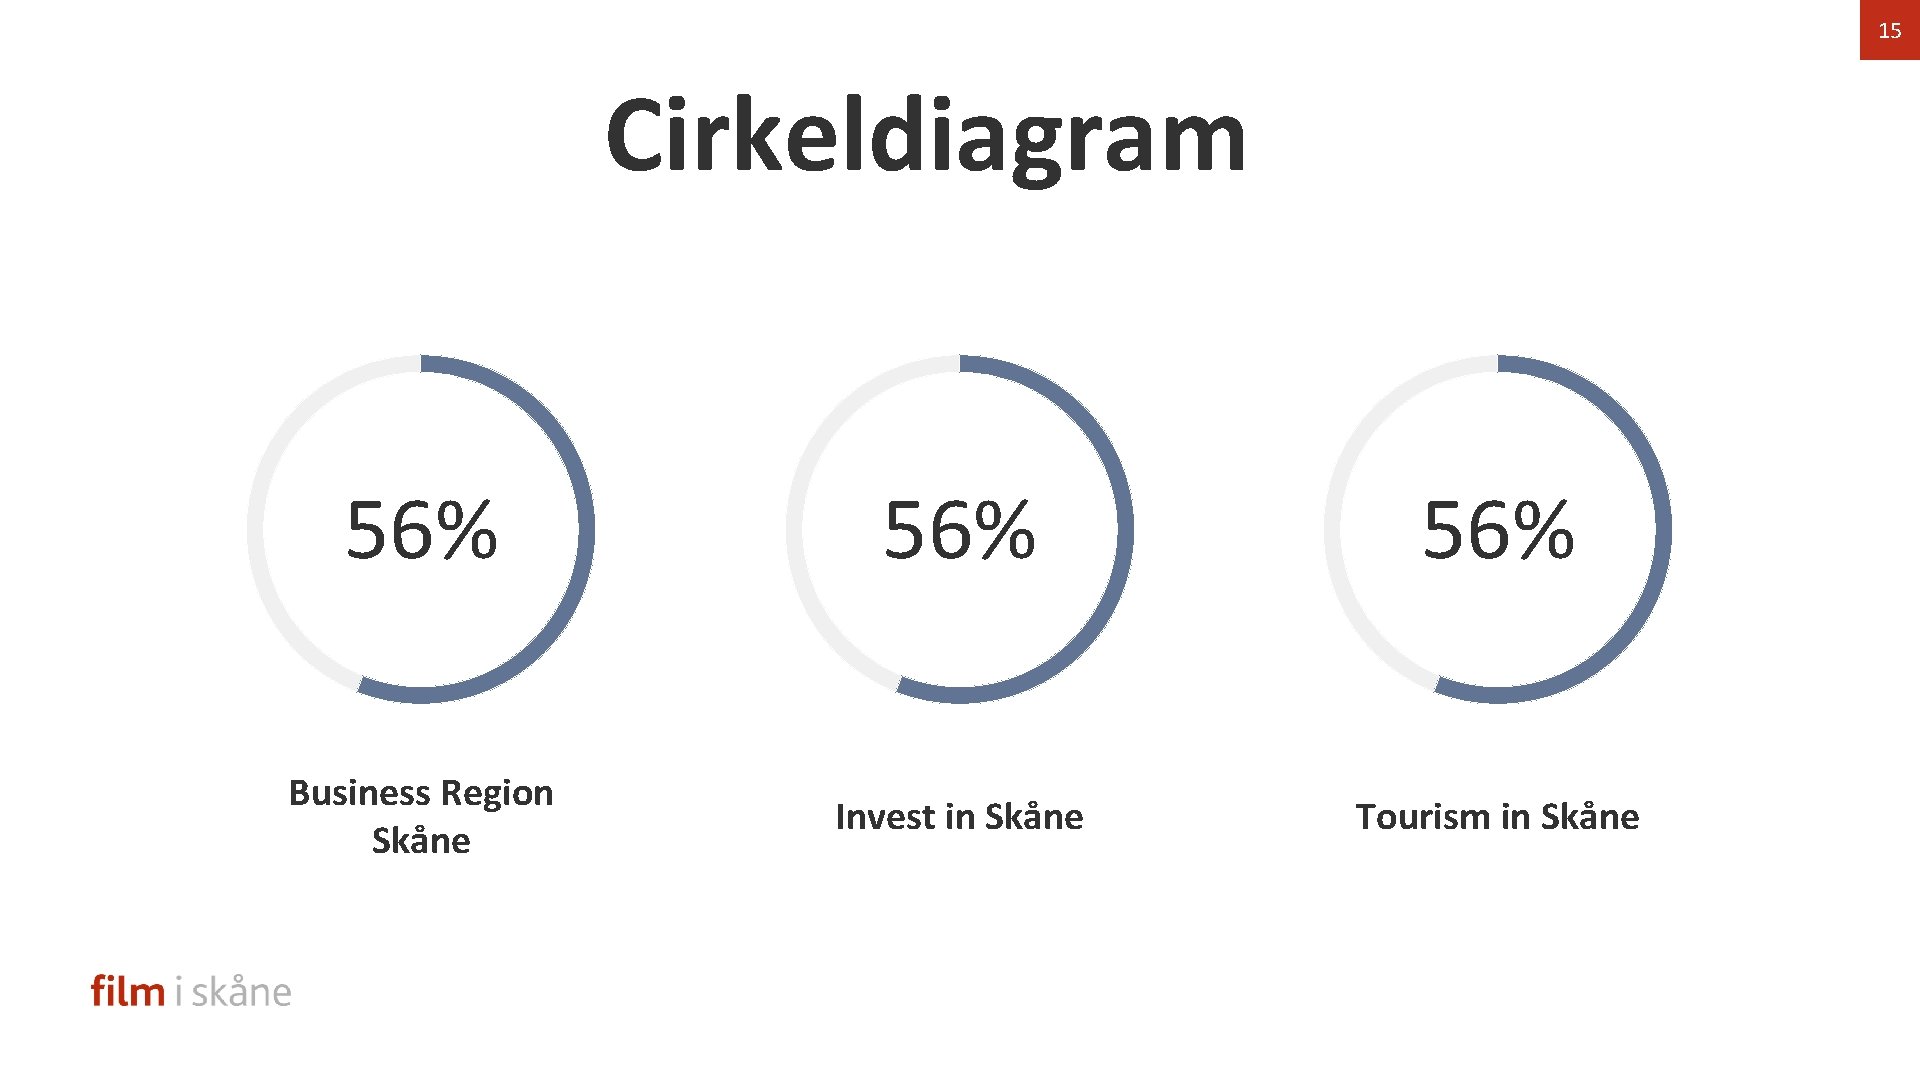 15 Cirkeldiagram 56% 56% Business Region Skåne Invest in Skåne Tourism in Skåne 